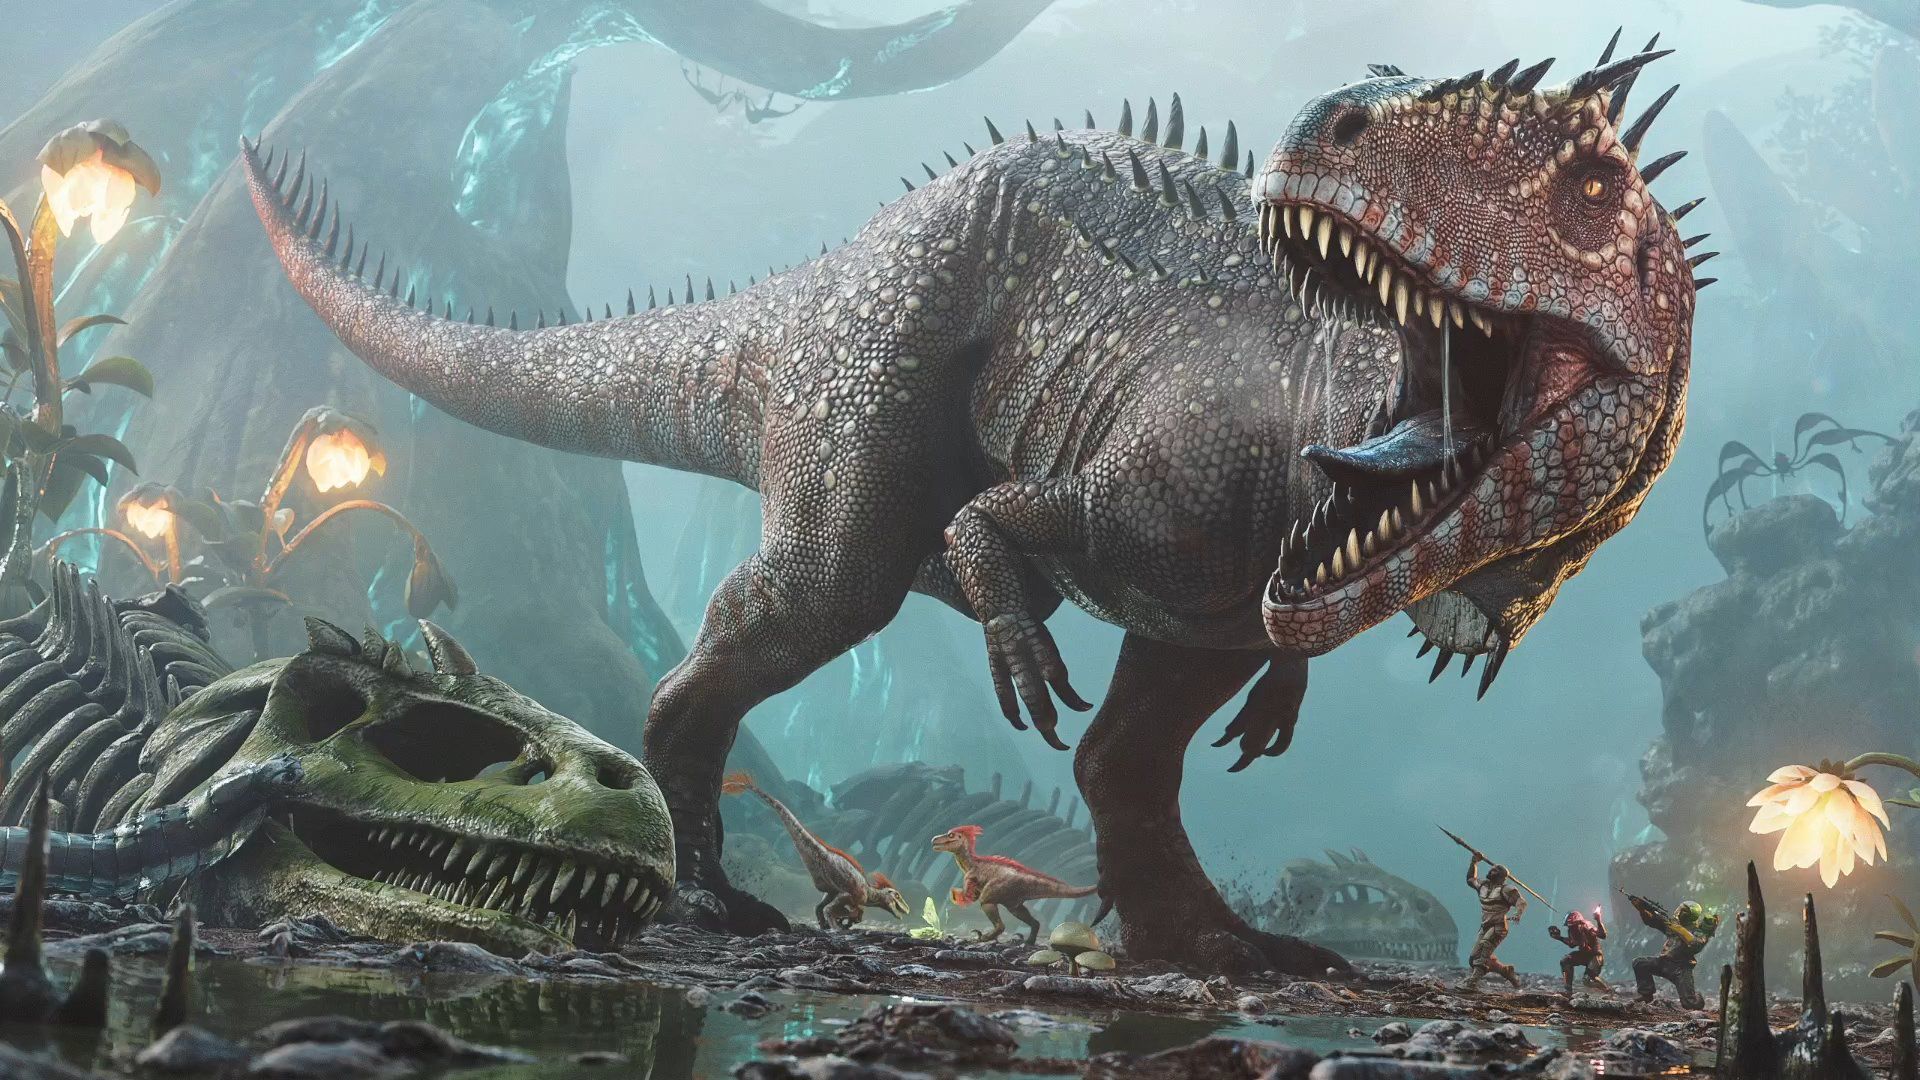 ARK, survival de mundo aberto com dinossauros ganha primeiro trailer